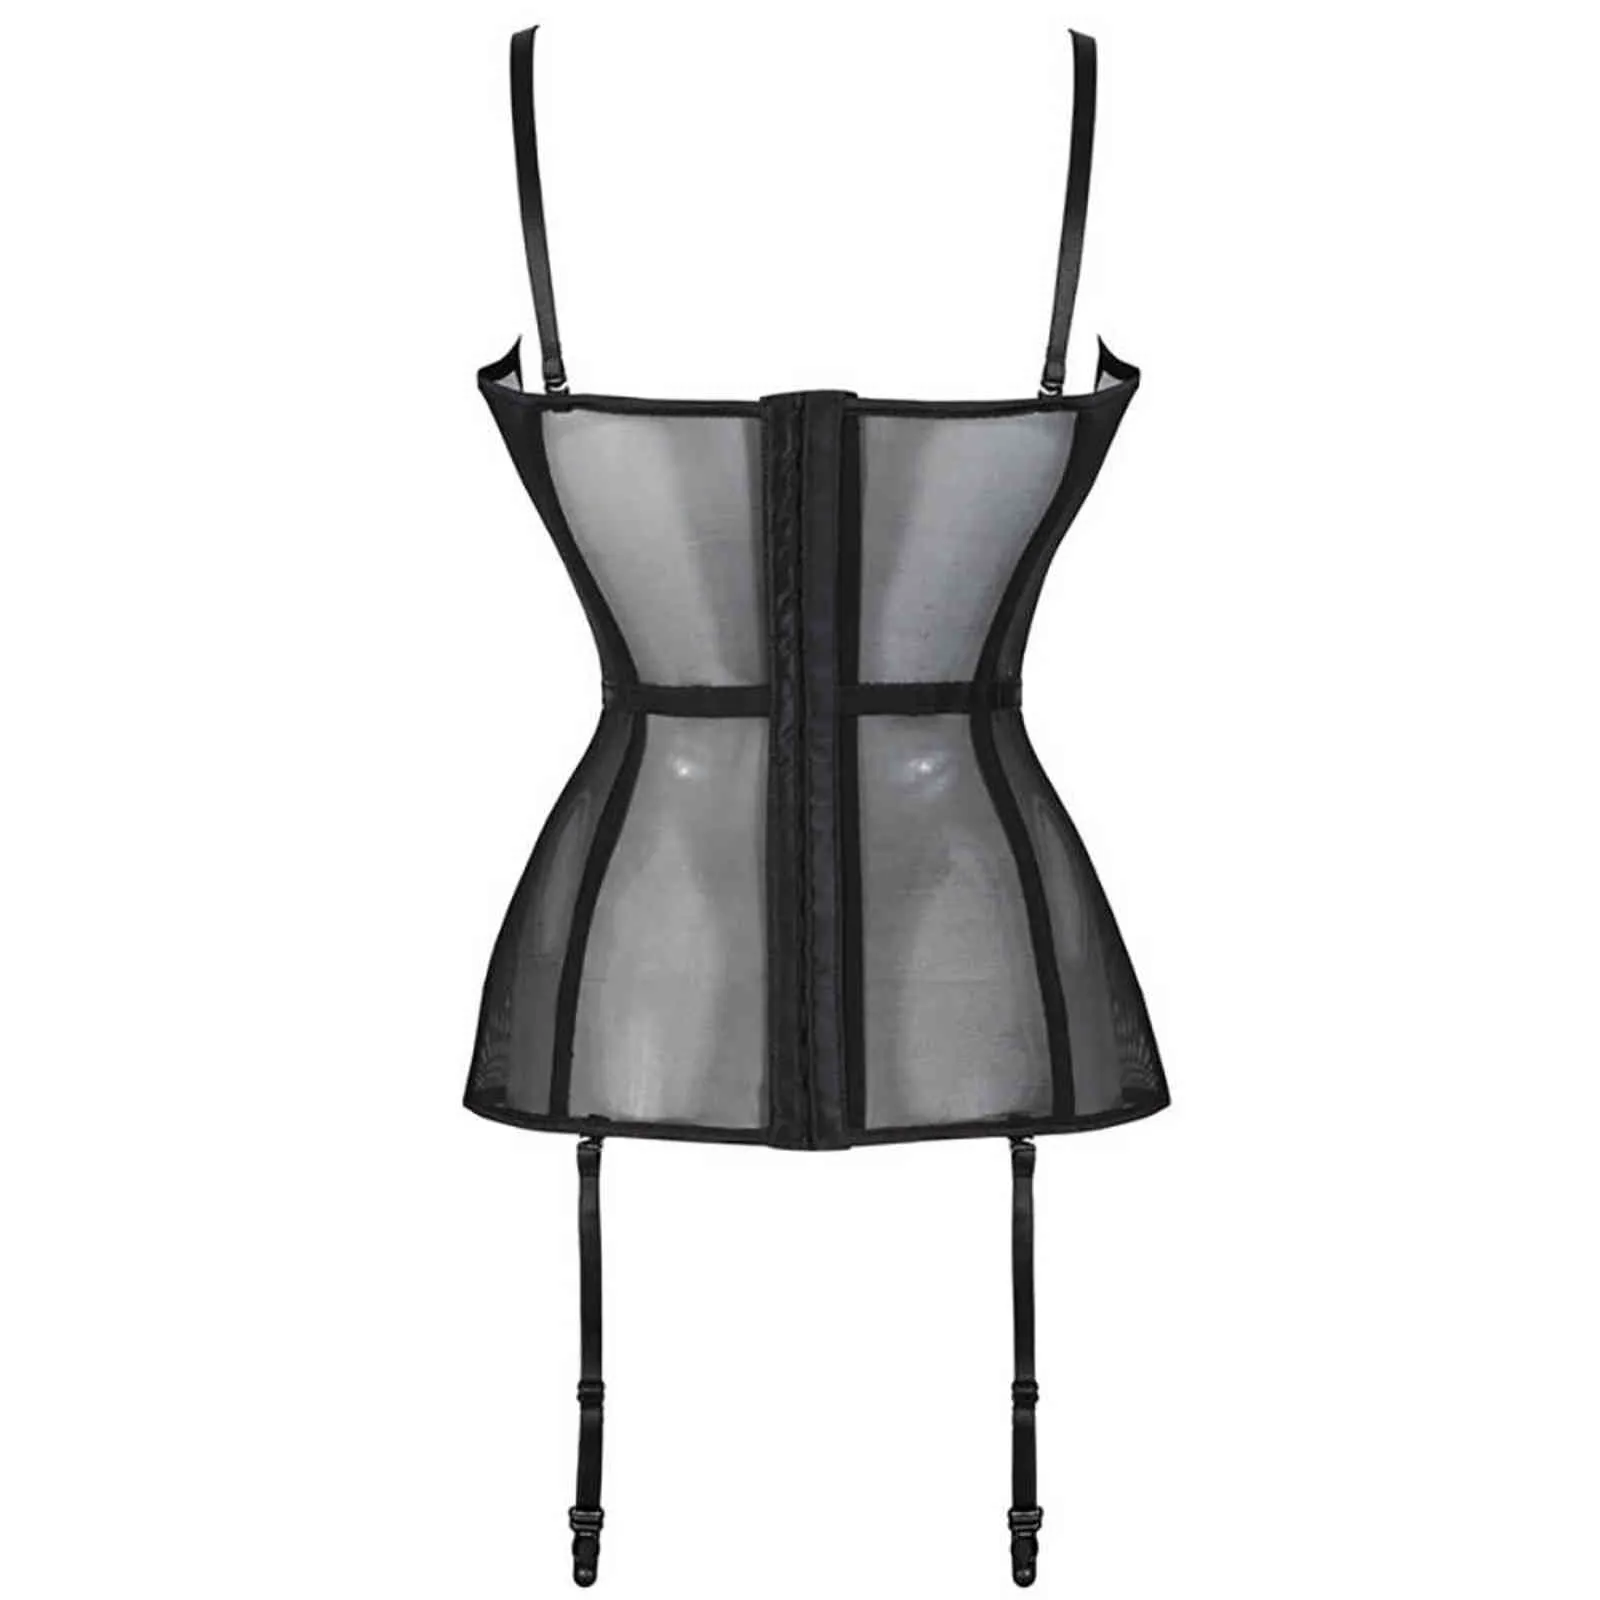 NXY sexy set corsetto nero bustier sexy moda donna lingerie disossato top cintura vita floreale con giarrettiera taglie forti 1130